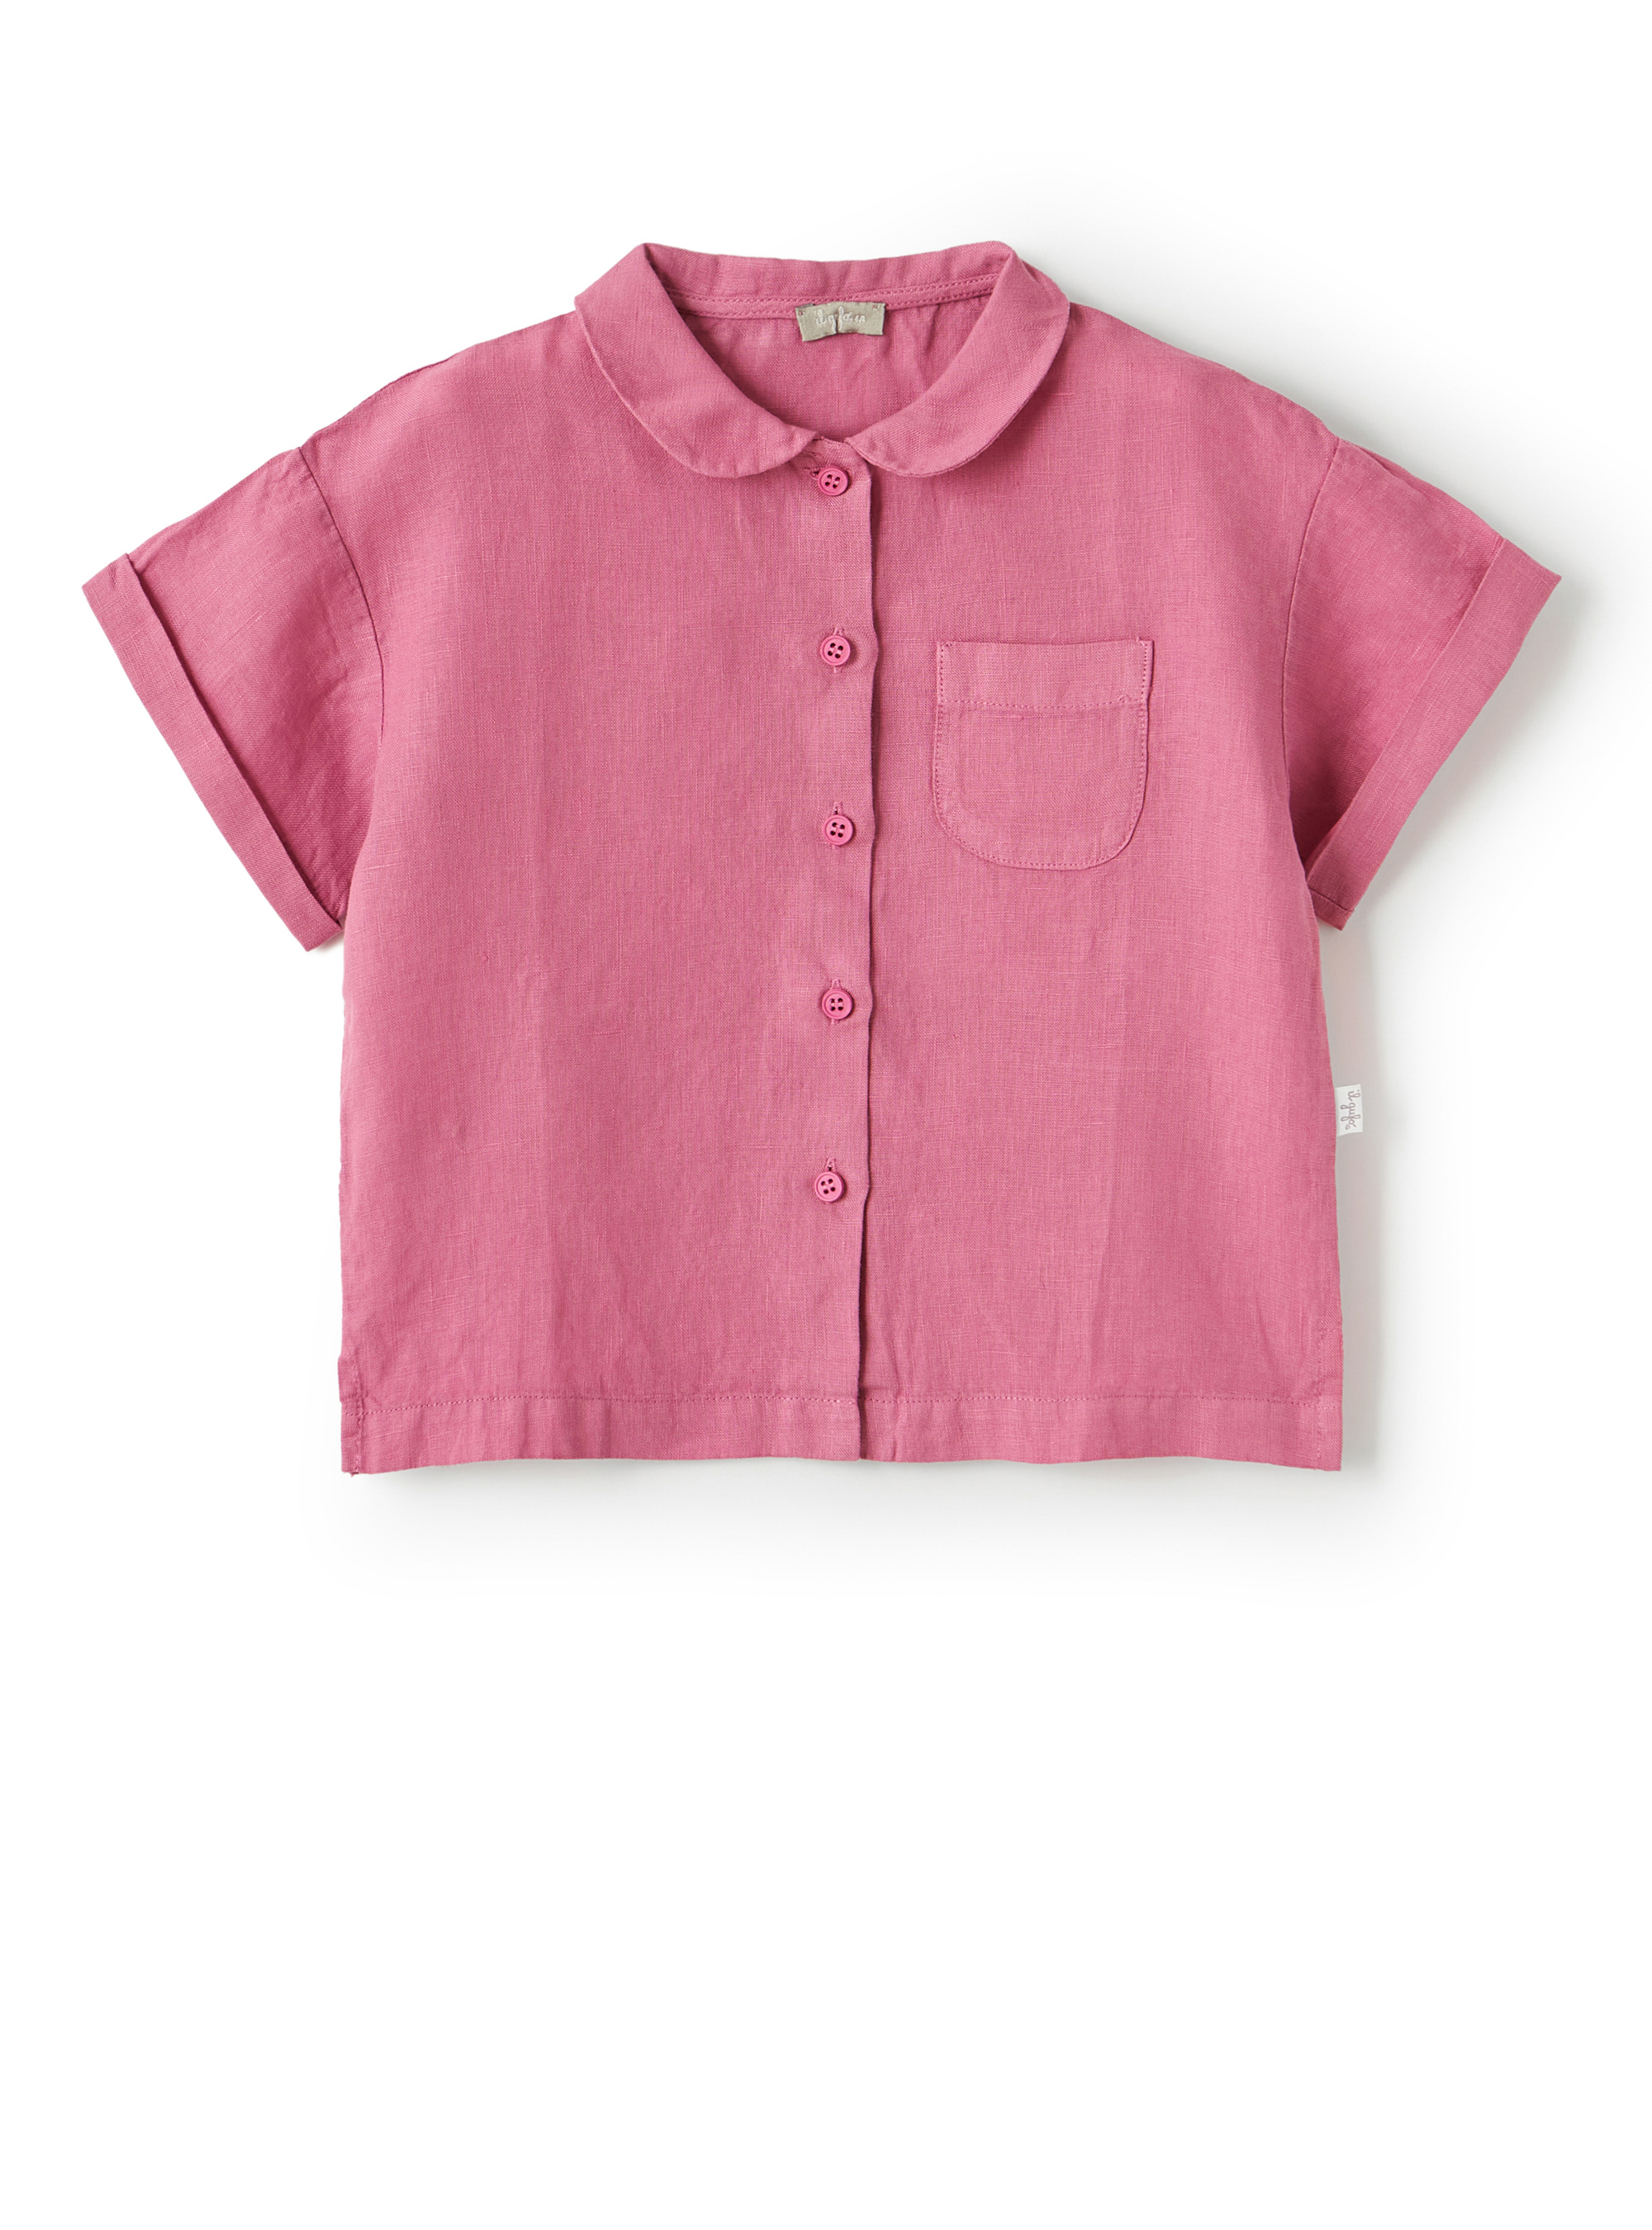 Lilafarbenes Leinenhemd mit Brusttasche - Hemden - Il Gufo